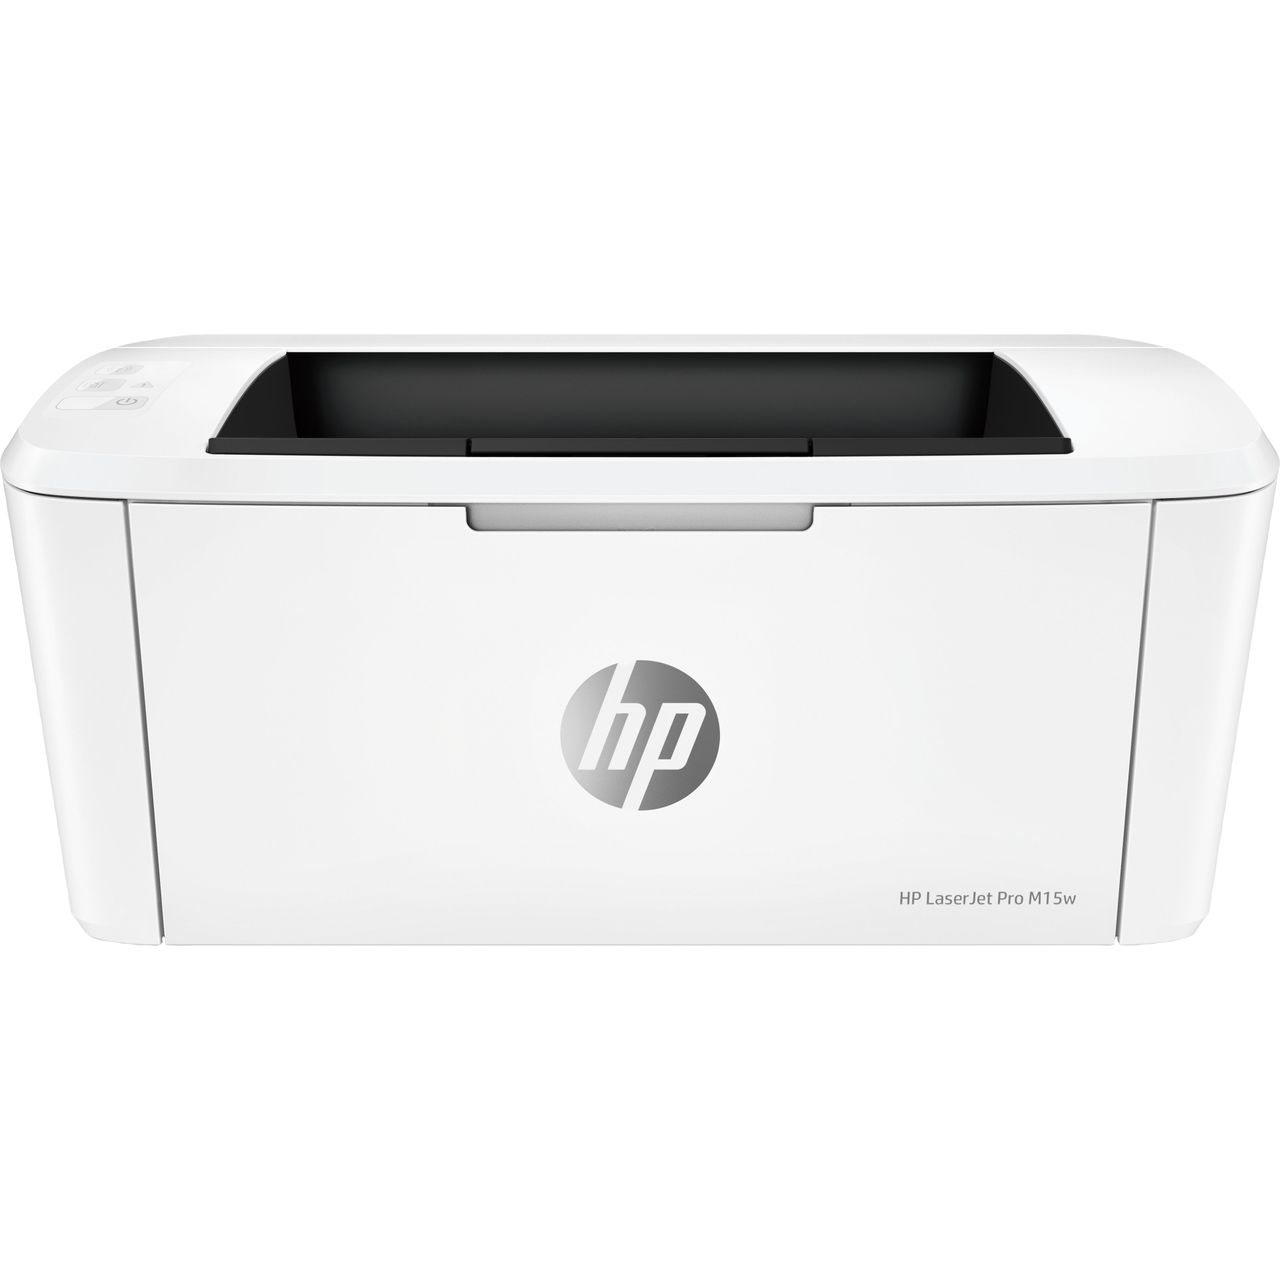 HP LaserJet Pro M15w Laser Printer Review